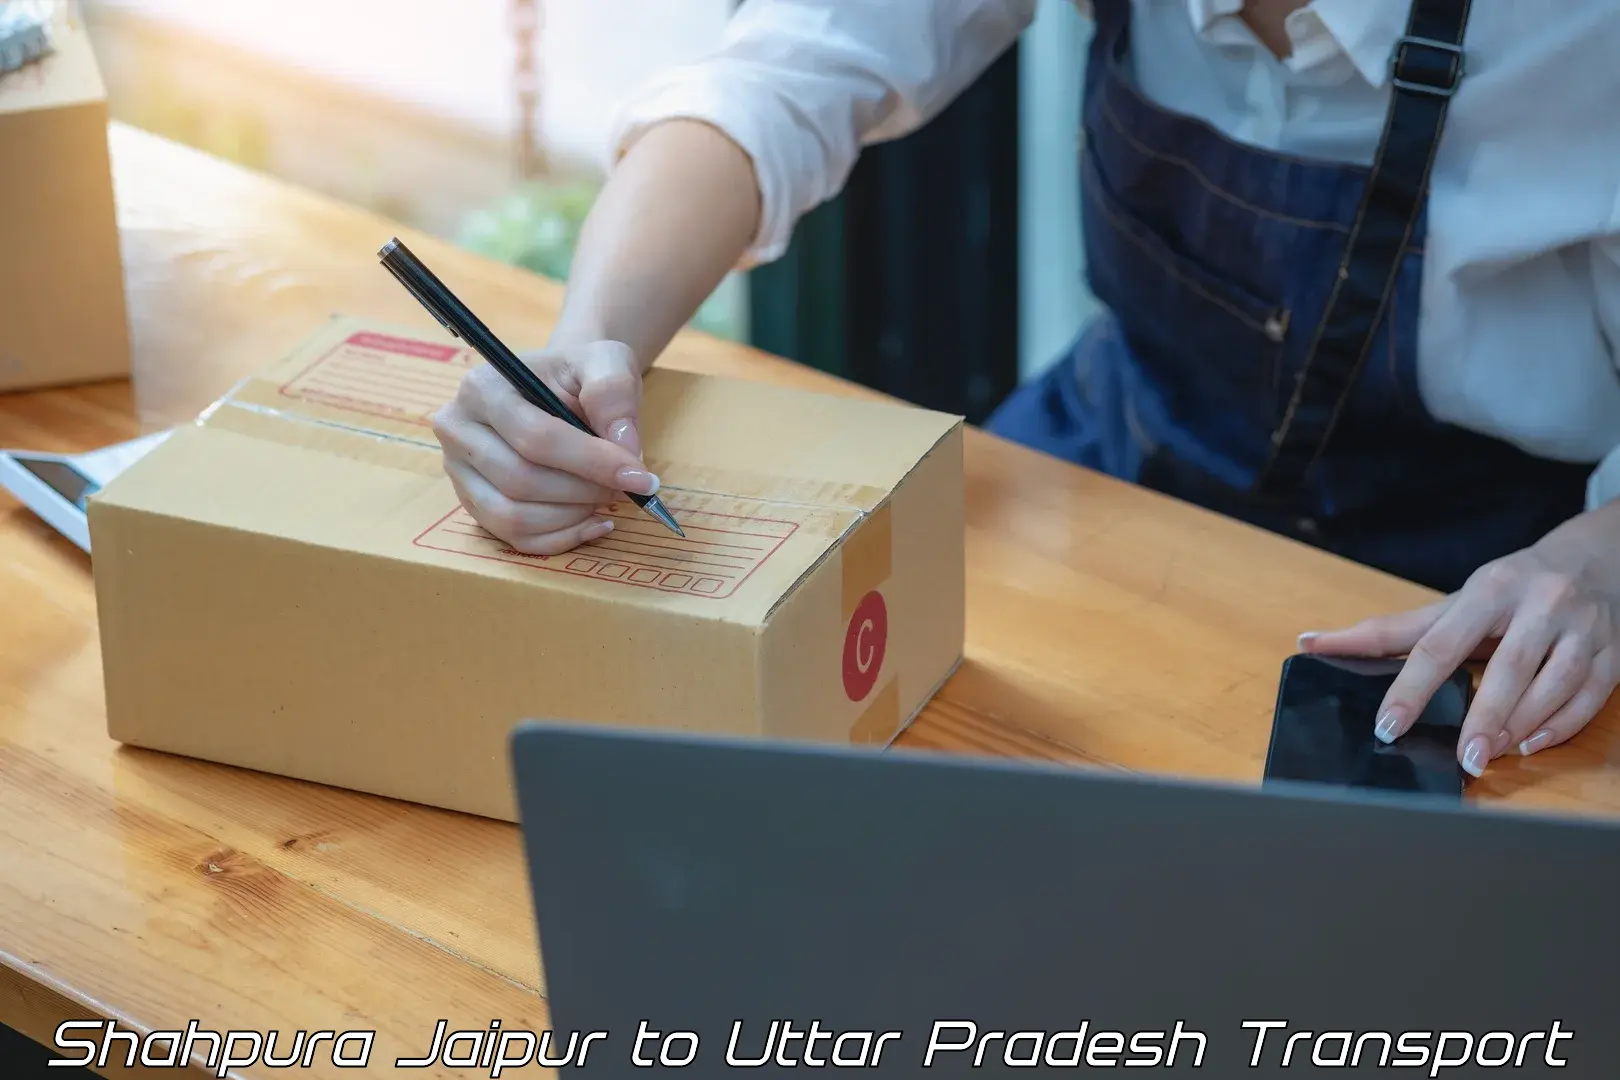 Two wheeler parcel service Shahpura Jaipur to Uttar Pradesh